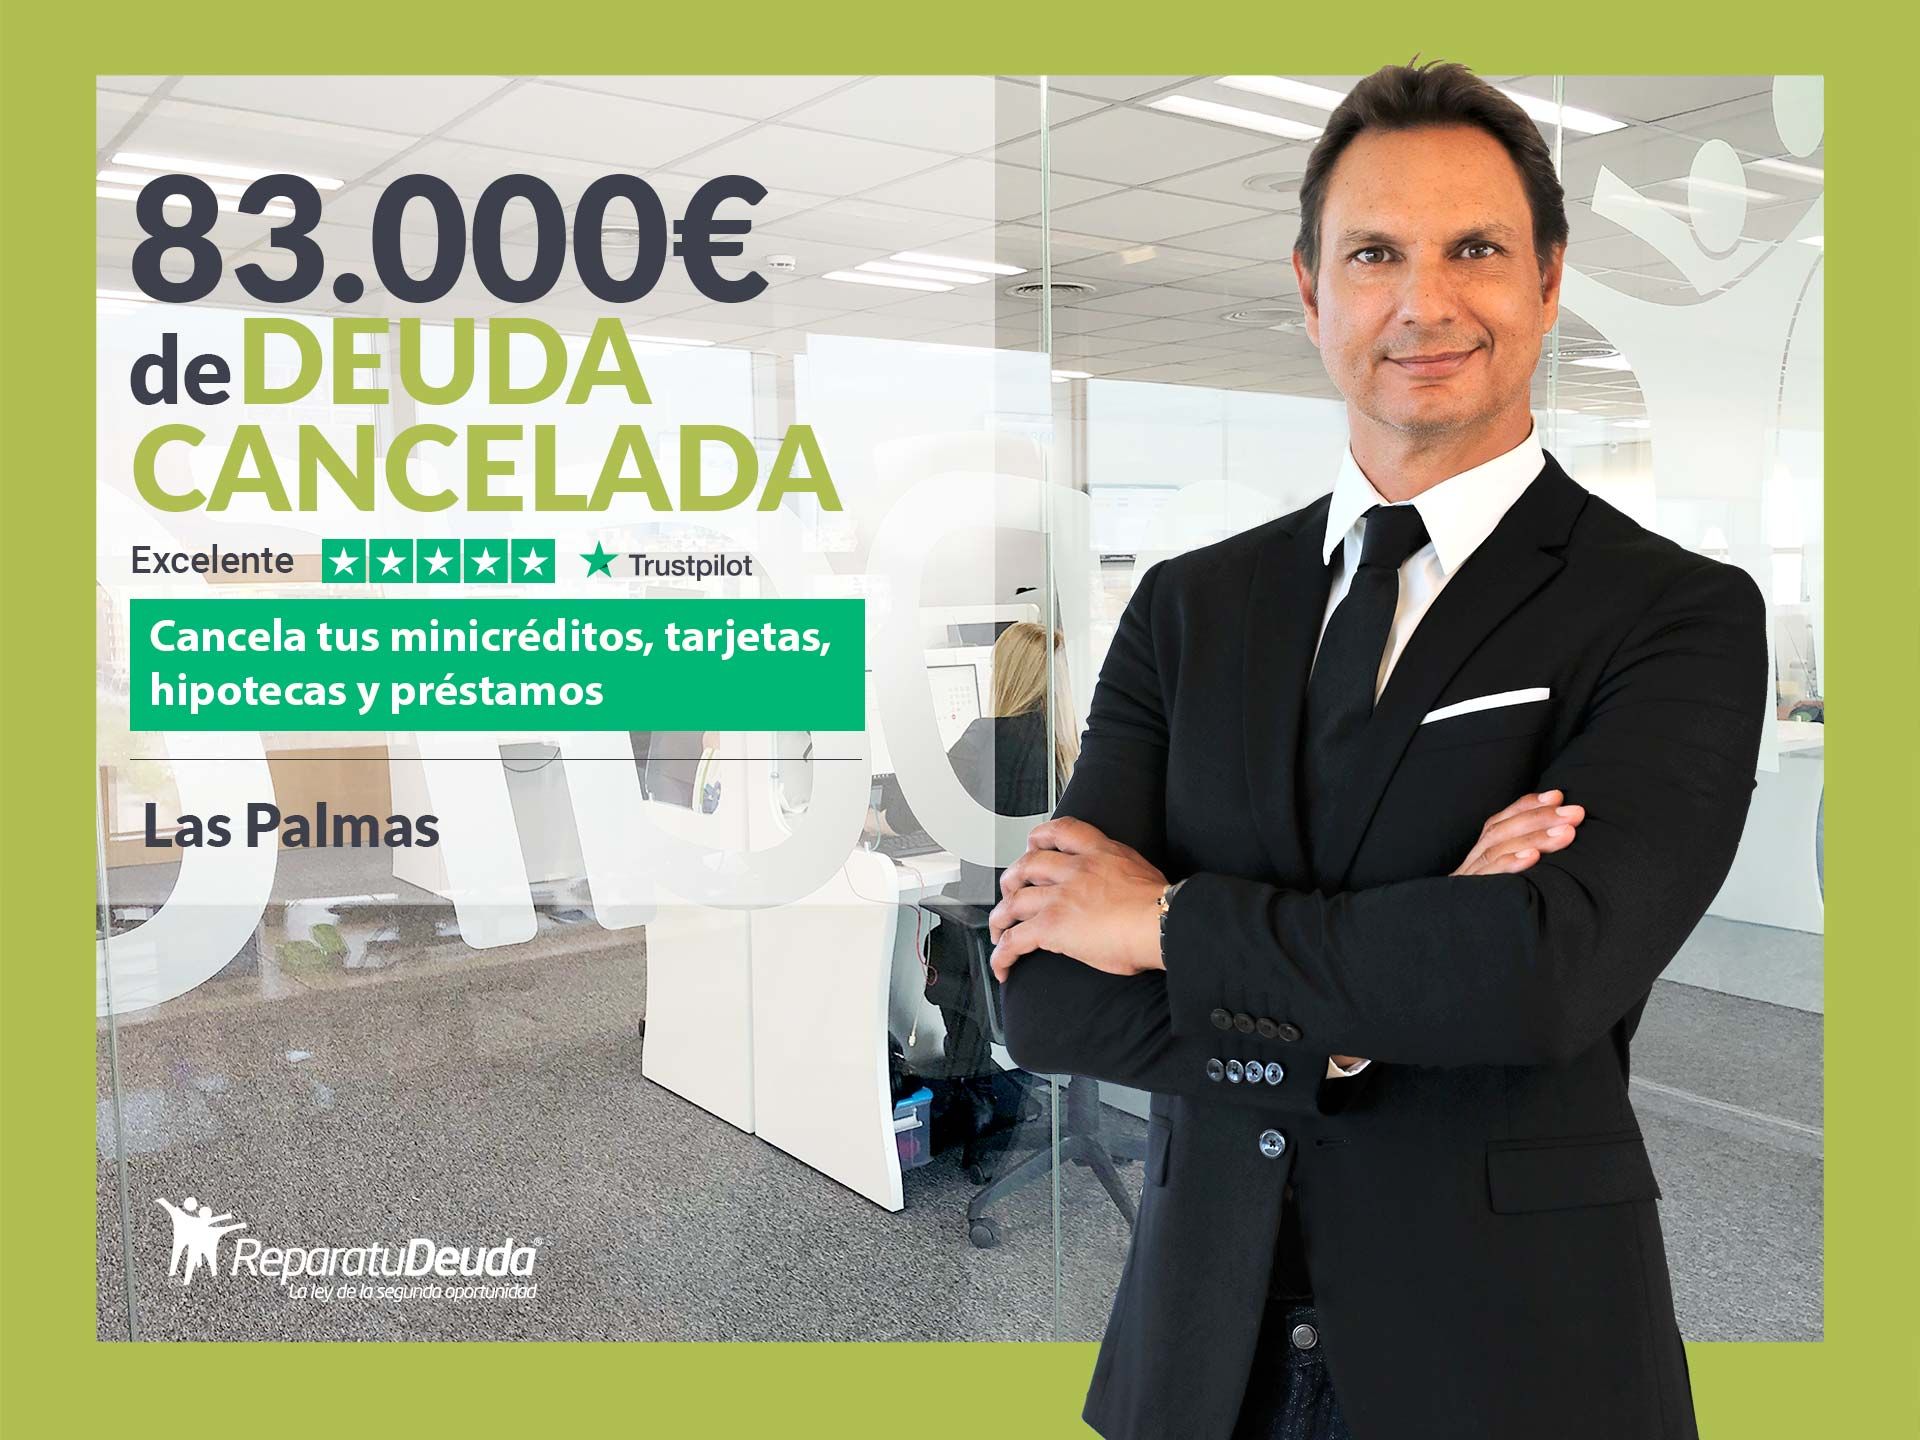 Repara tu Deuda Abogados cancela 83.000? en Las Palmas de Gran Canaria con la Ley de Segunda Oportunidad